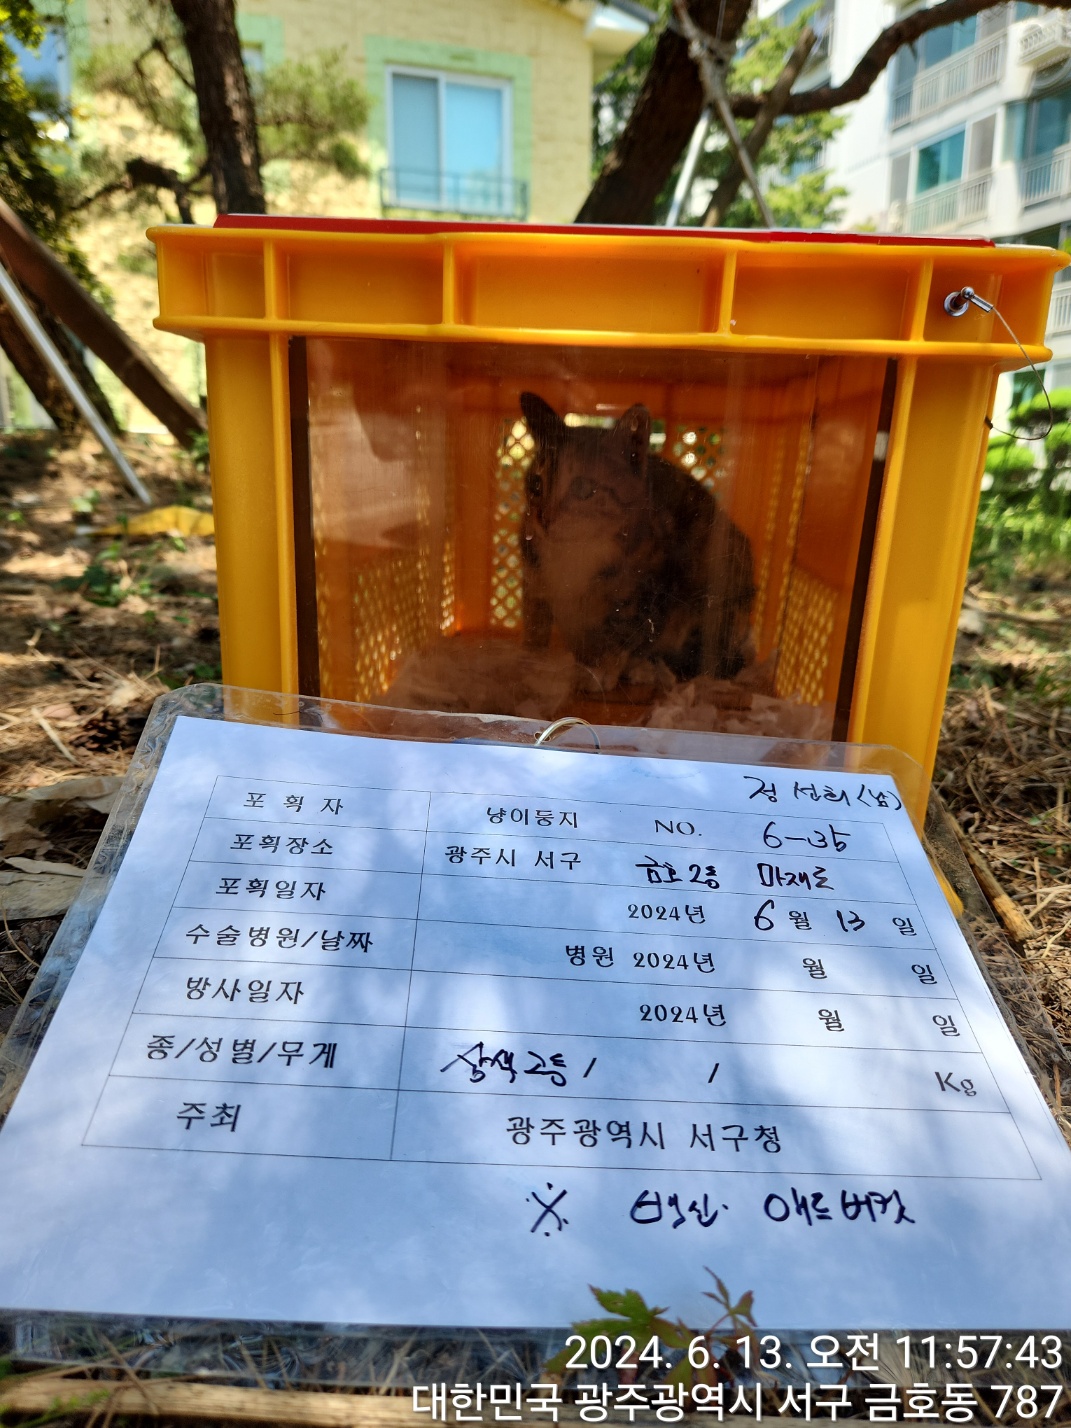 보호중동물사진 공고번호-광주-서구-2024-00345